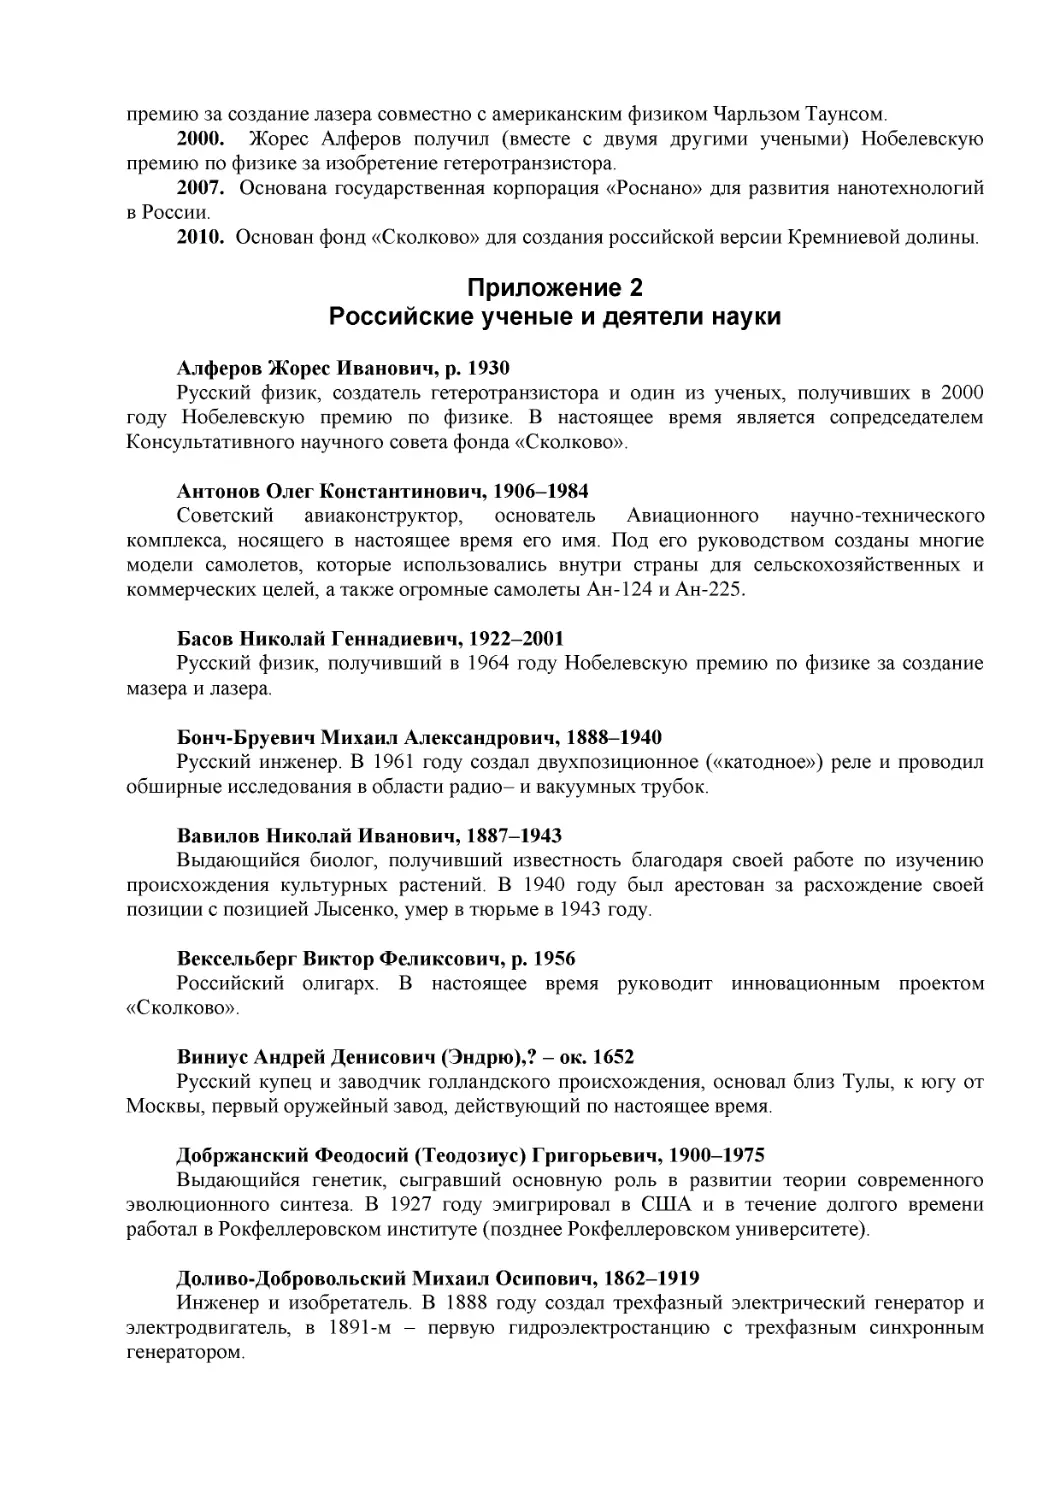 Приложение 2
Российские ученые и деятели науки